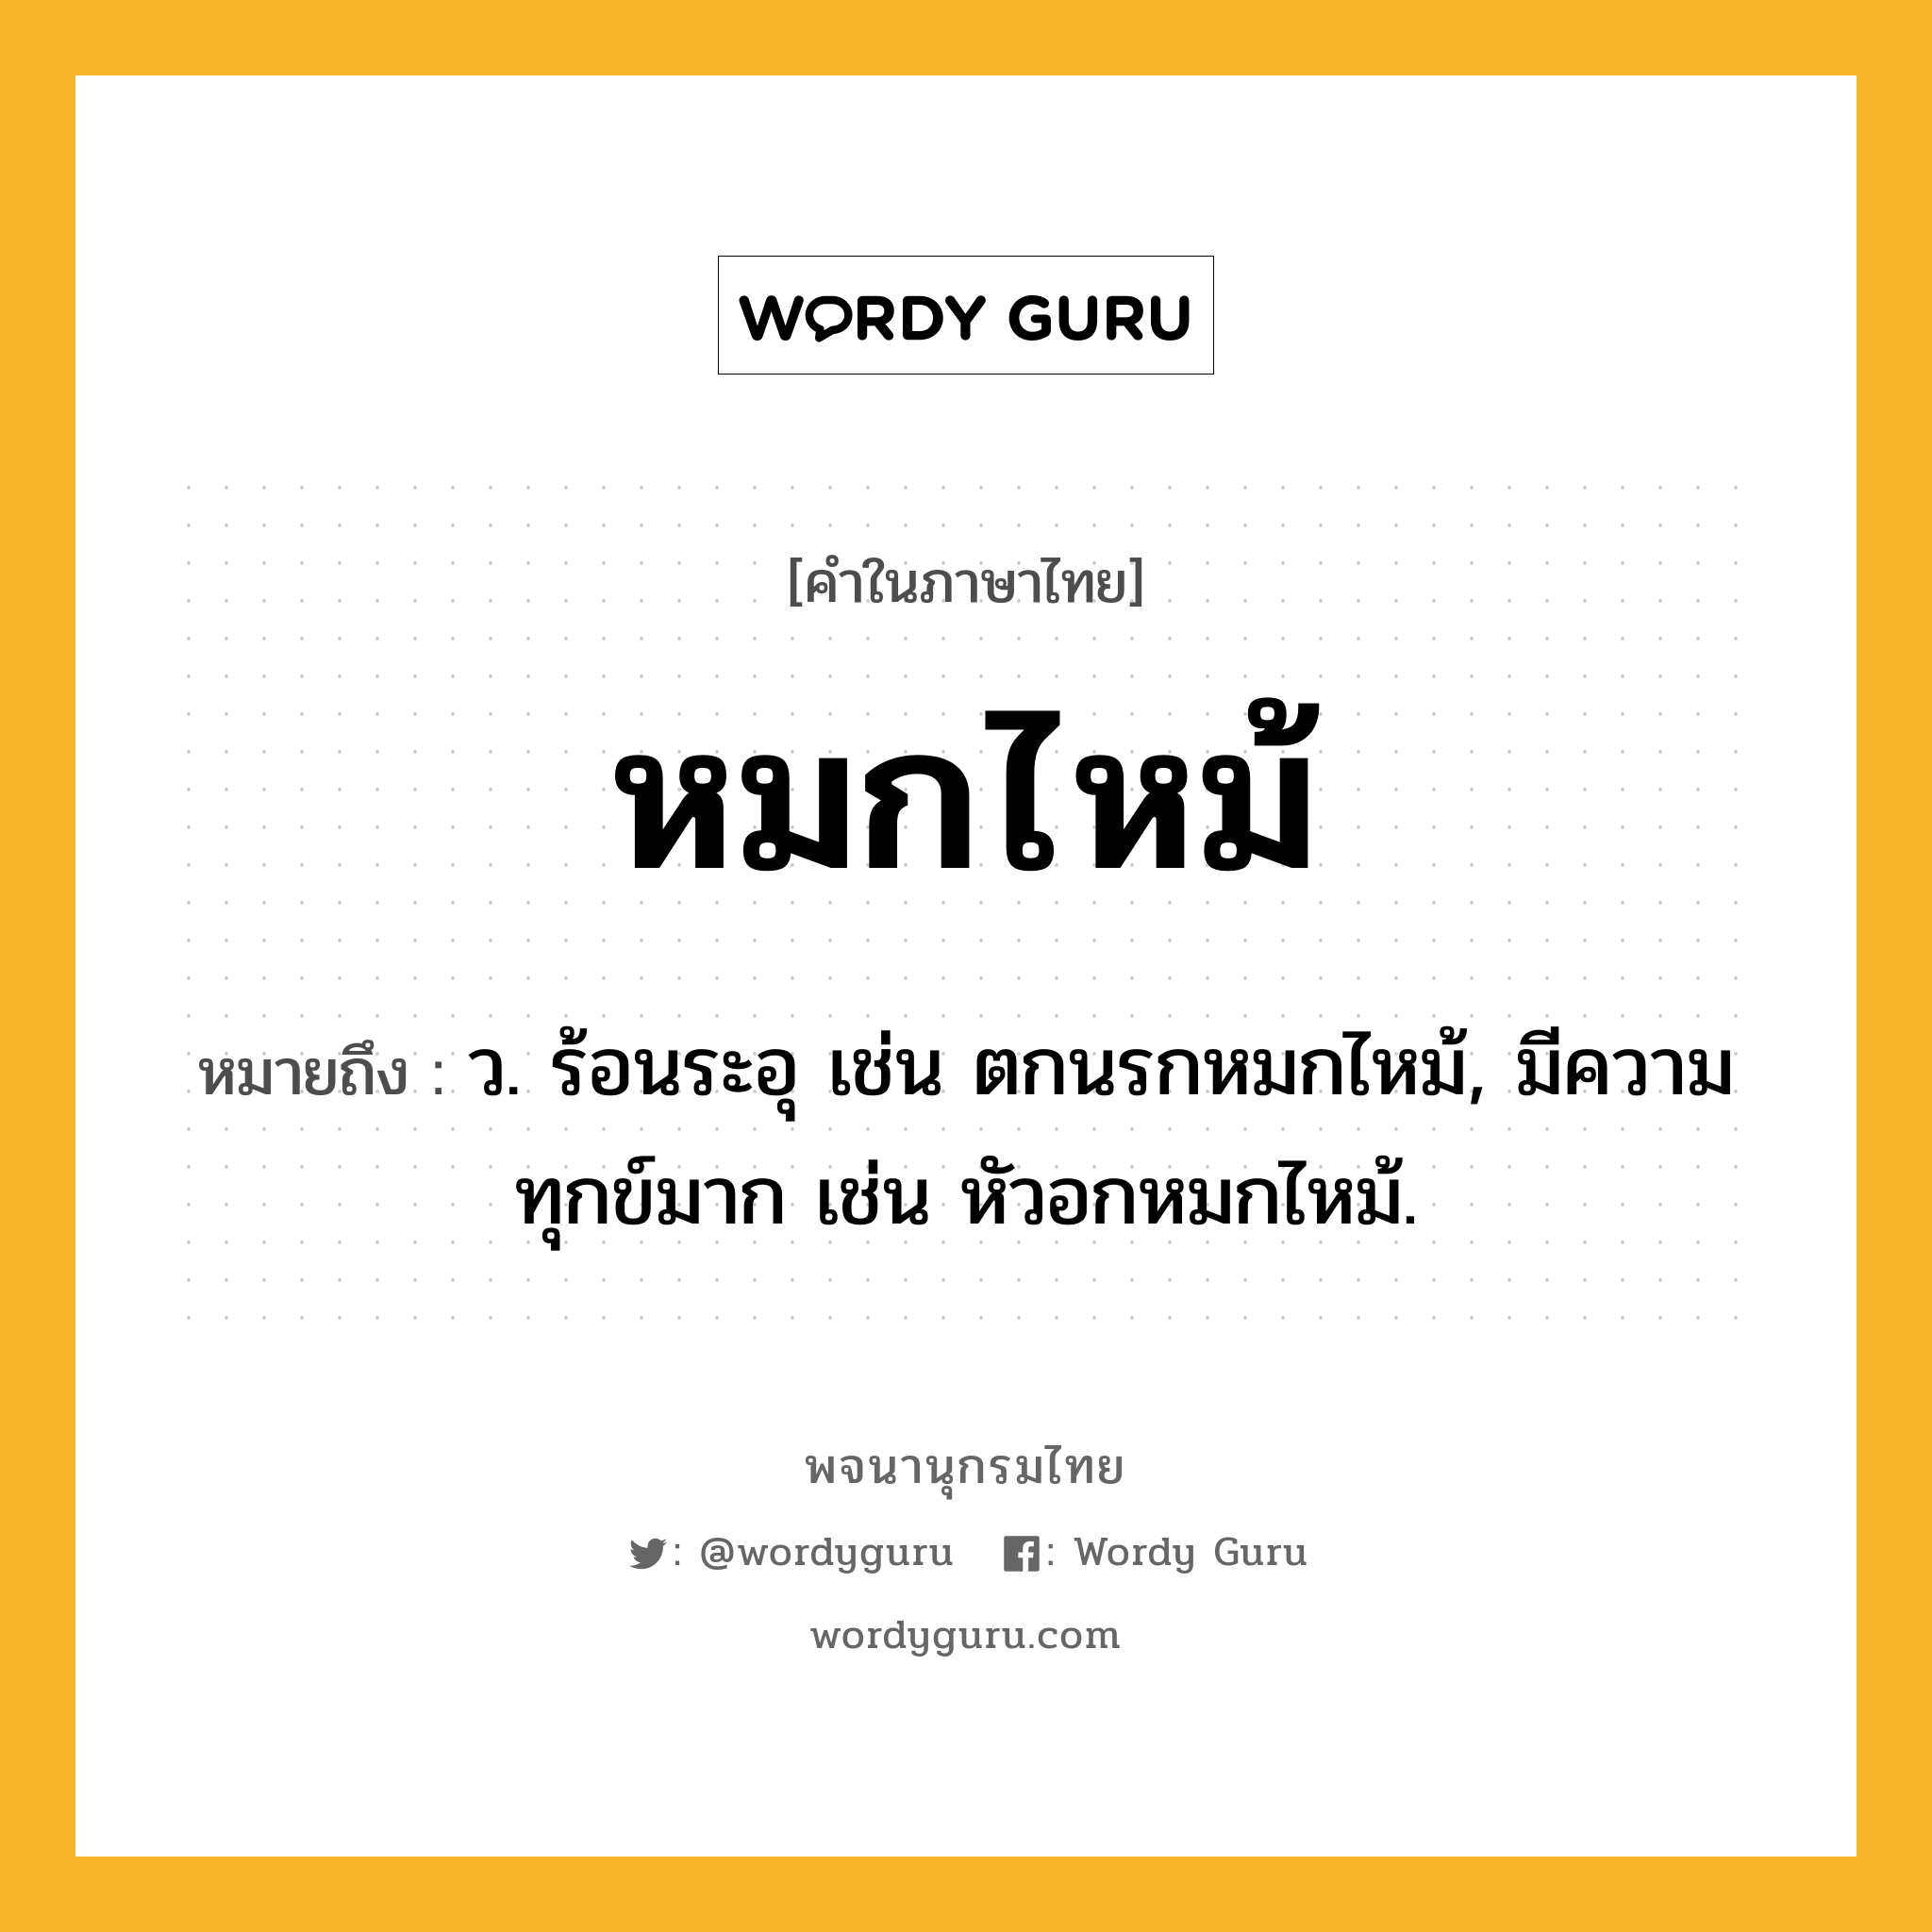 หมกไหม้ ความหมาย หมายถึงอะไร?, คำในภาษาไทย หมกไหม้ หมายถึง ว. ร้อนระอุ เช่น ตกนรกหมกไหม้, มีความทุกข์มาก เช่น หัวอกหมกไหม้.